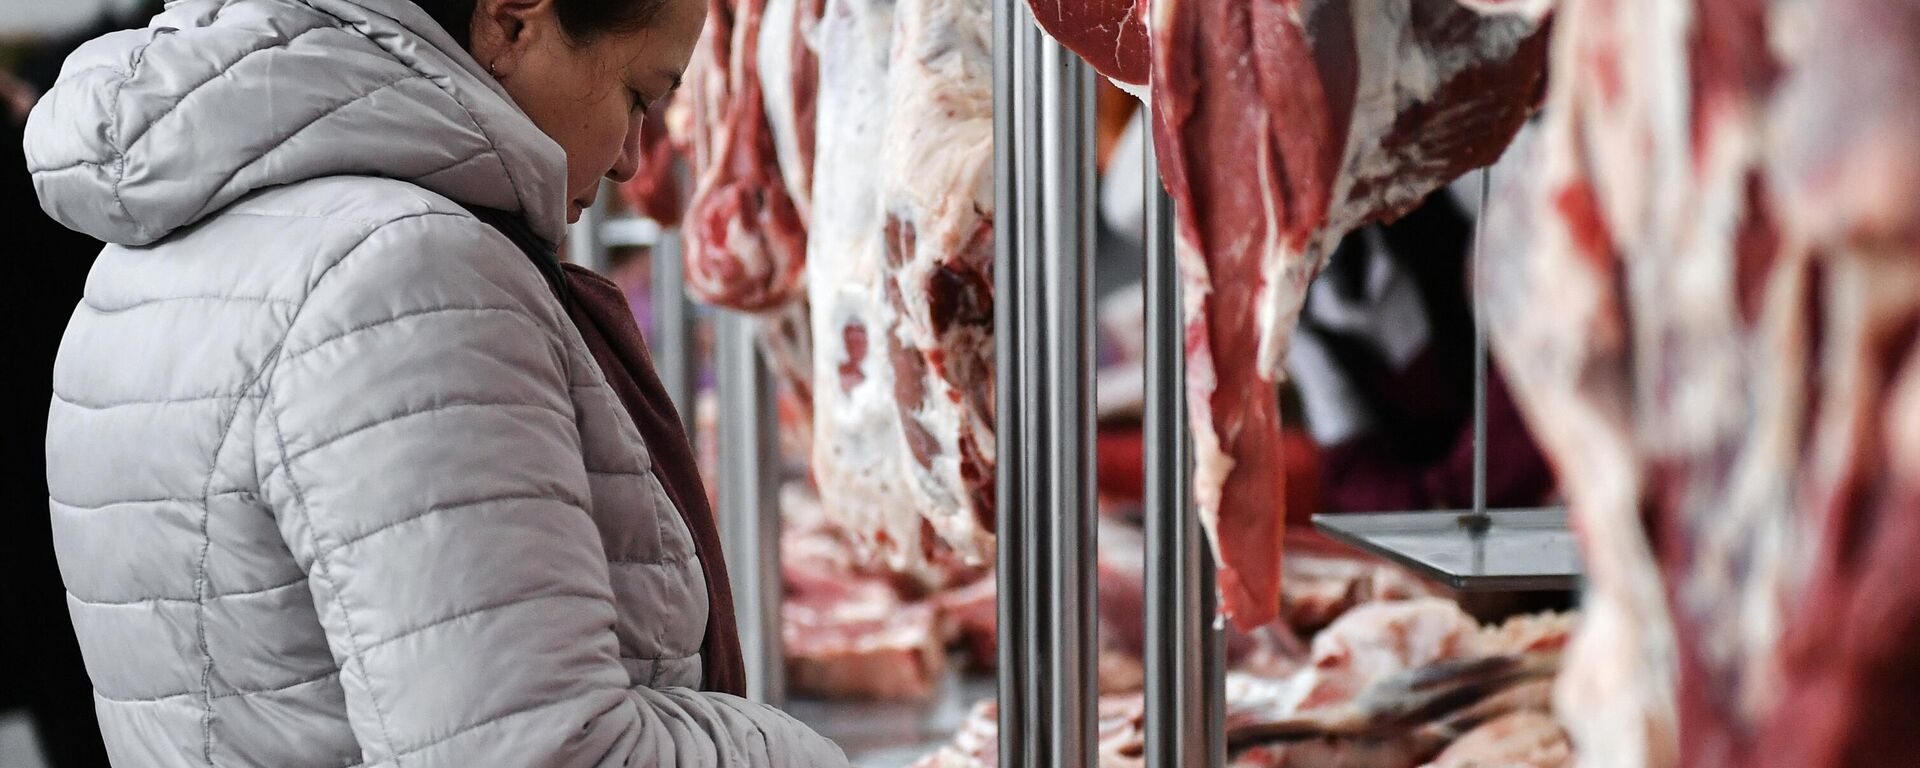 Торговля мясом в мясном лабазе на Центральном рынке в Симферополе - Sputnik Узбекистан, 1920, 28.10.2021